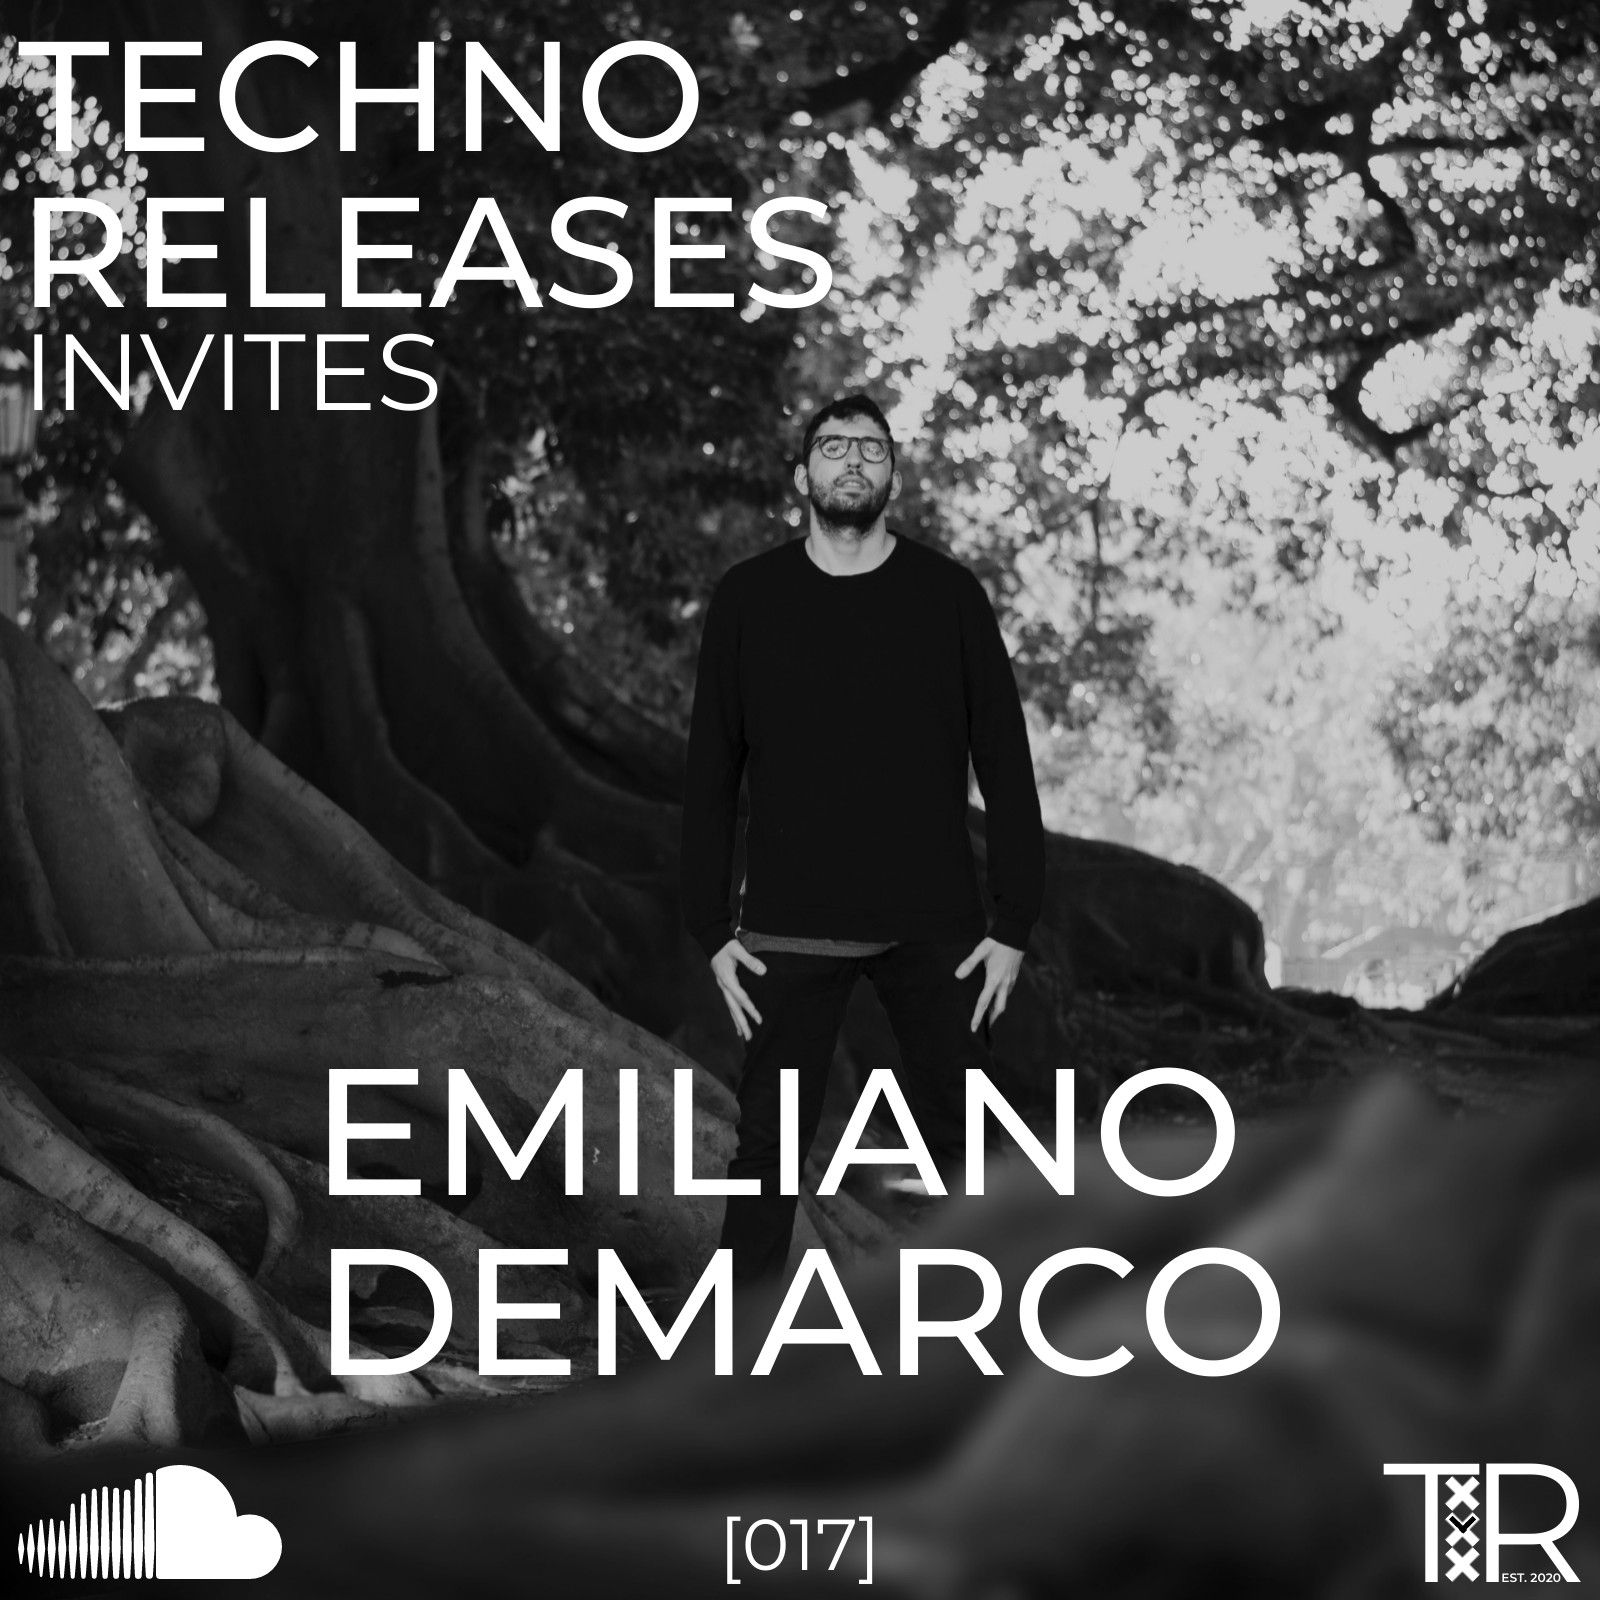 Landa Techno Releases Invites Emiliano Demarco - [017]